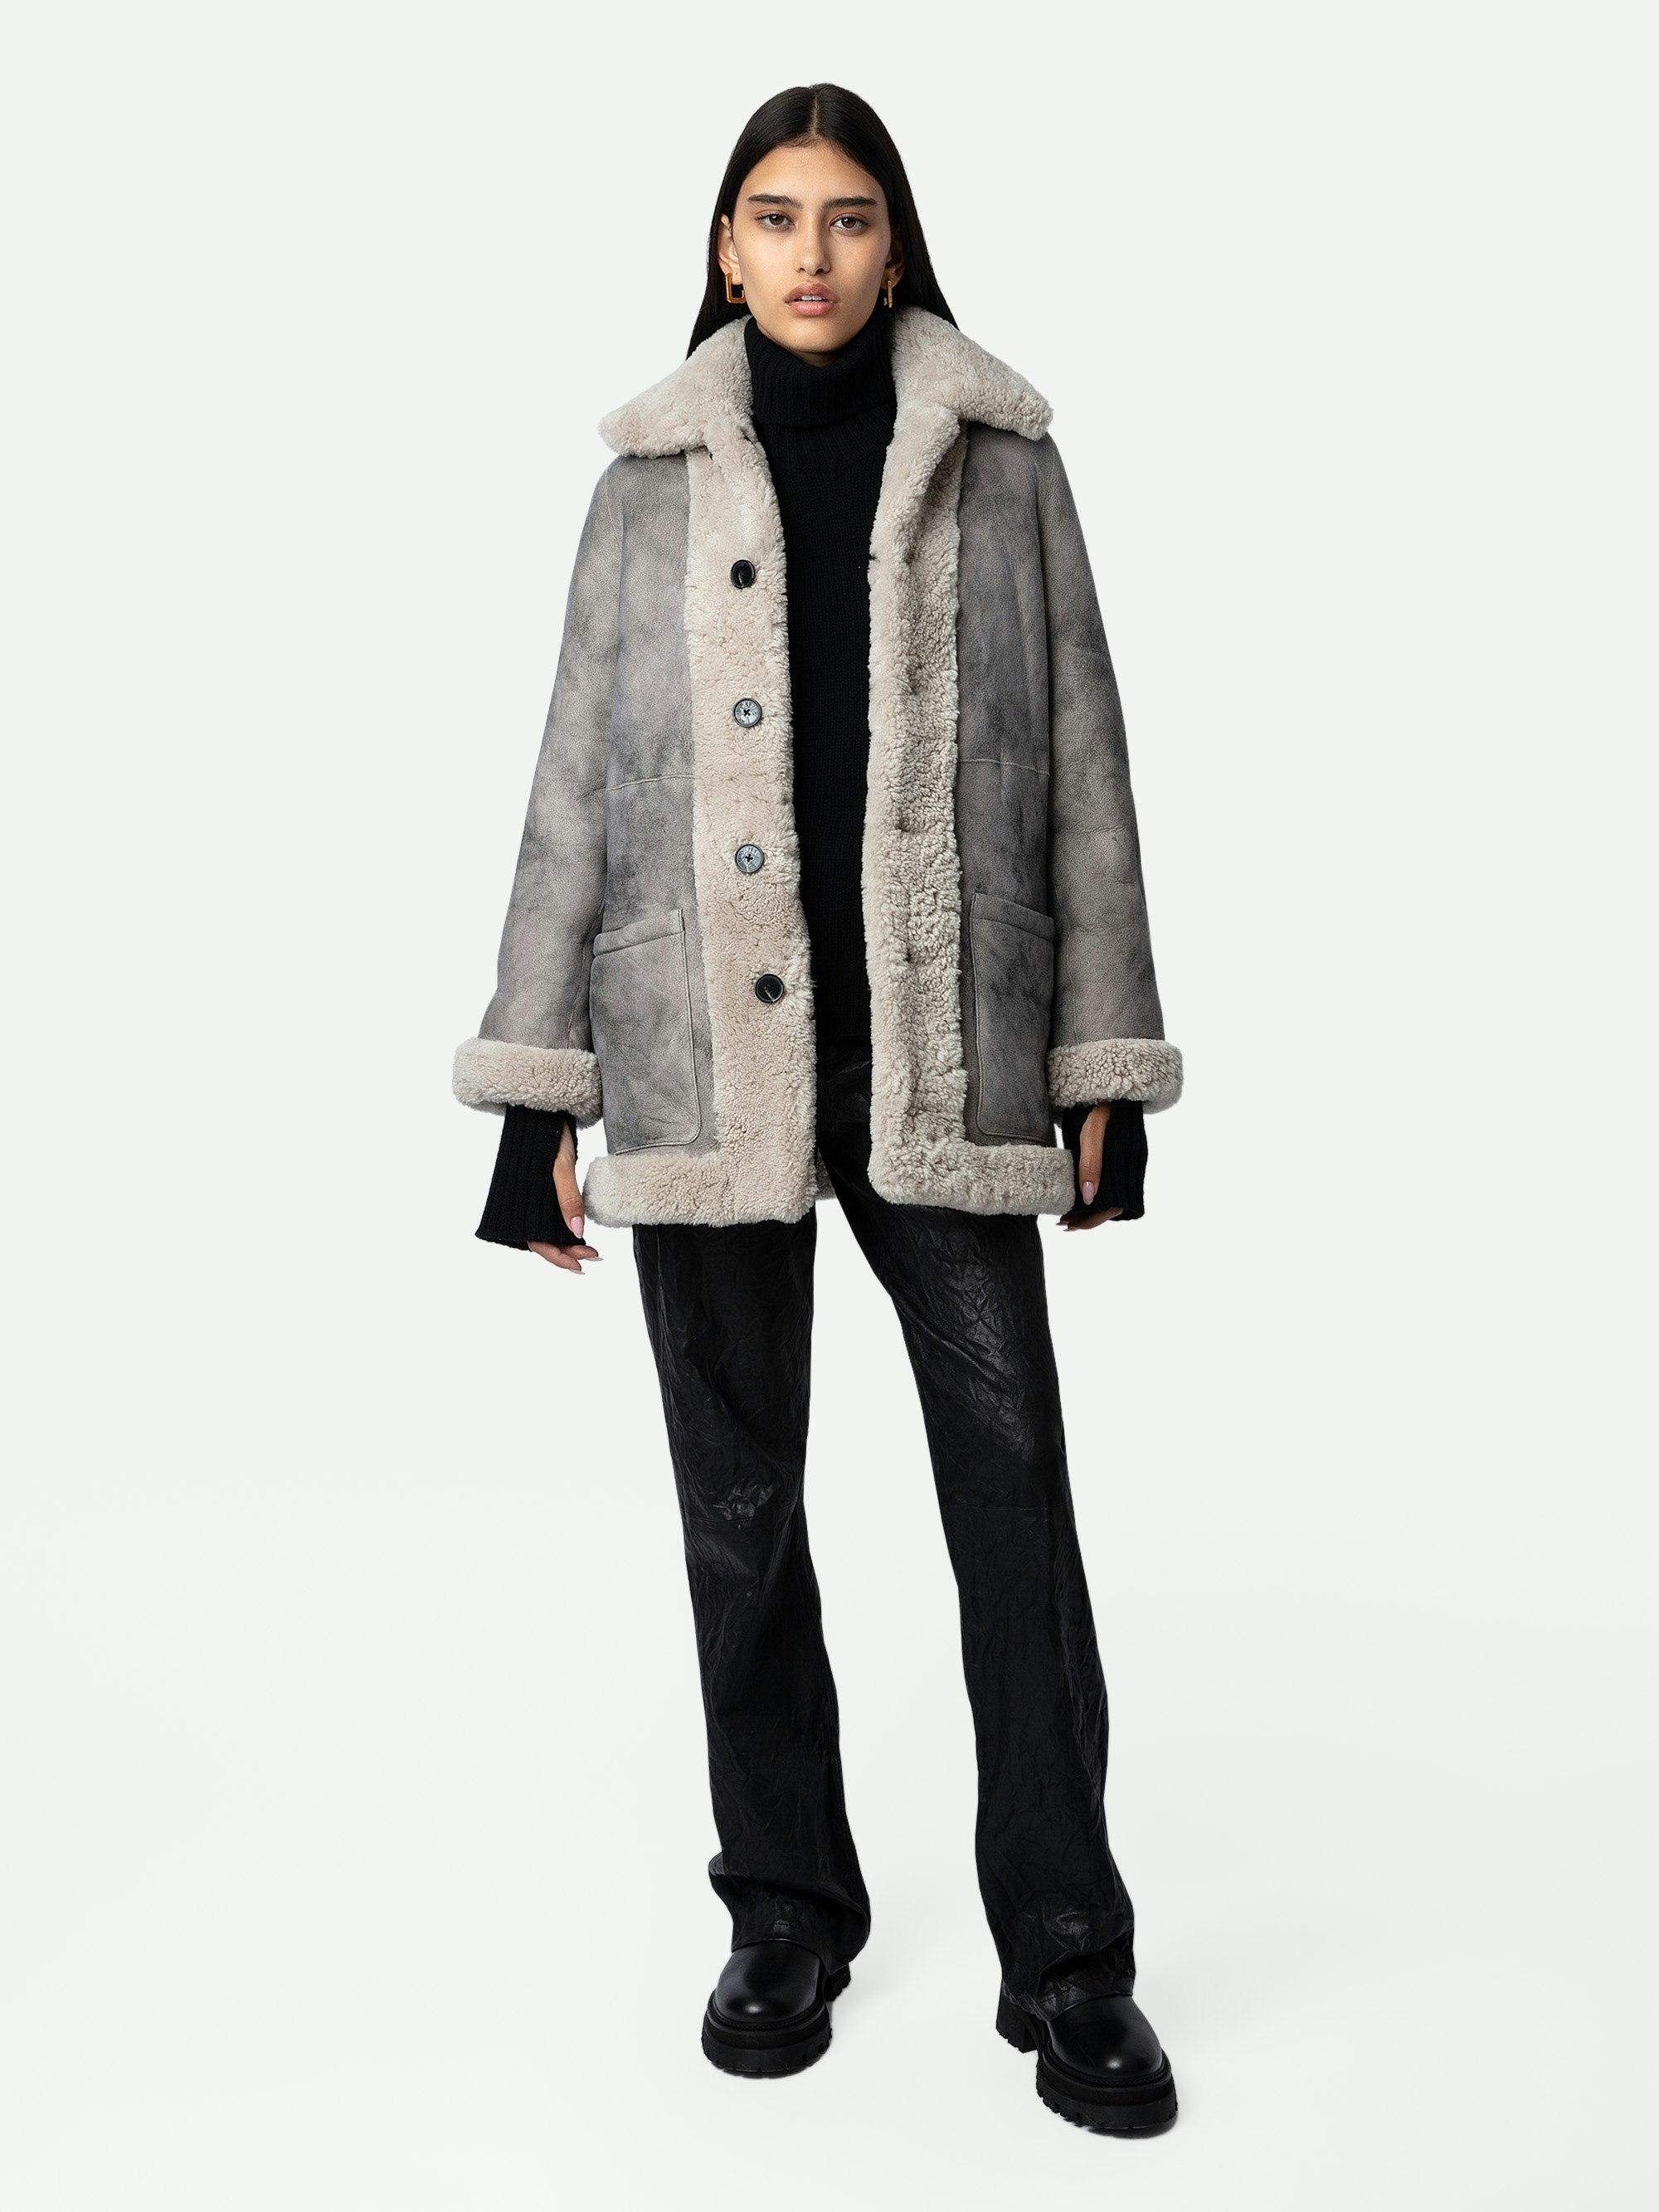 Magdas Shearling Coat - Women's Natural ecru shearling coat.